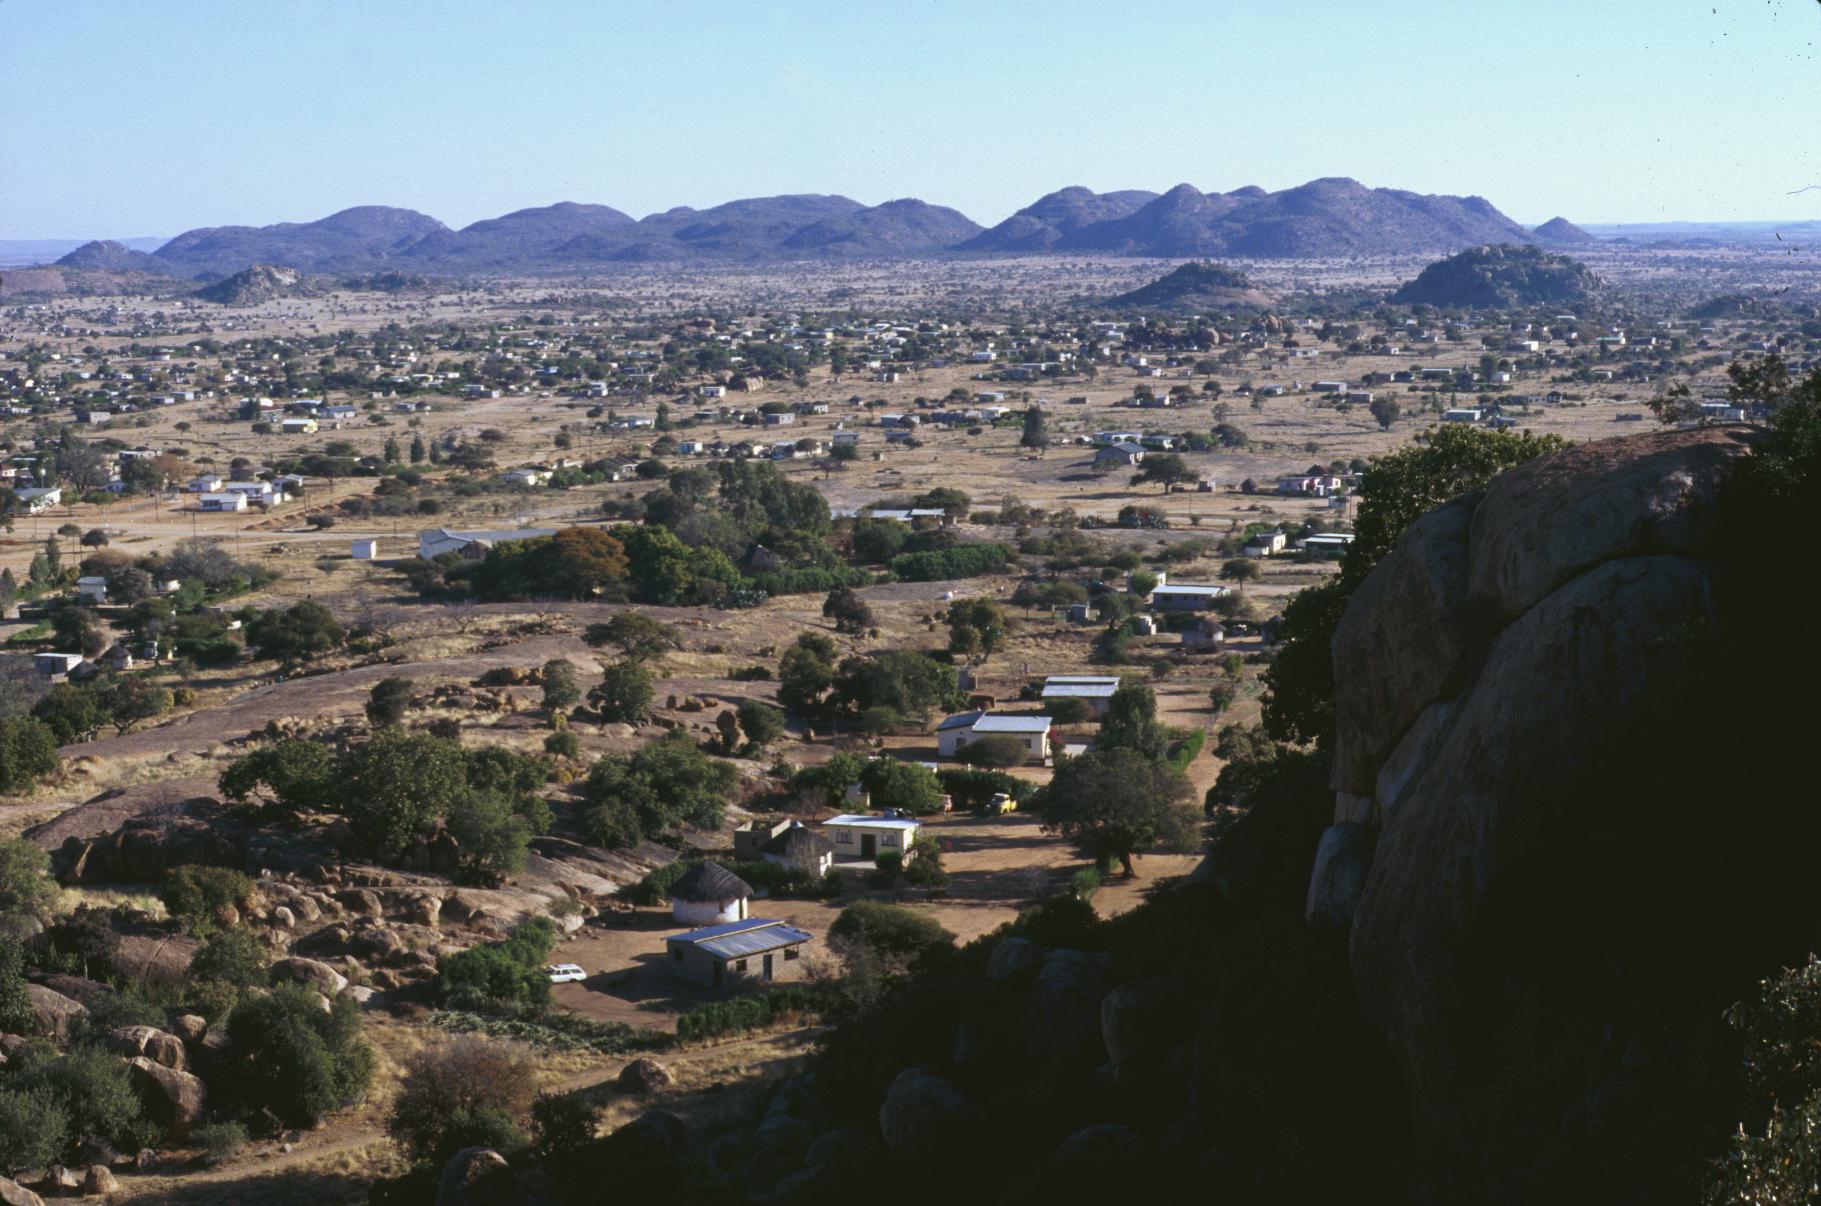 View of Thamaga